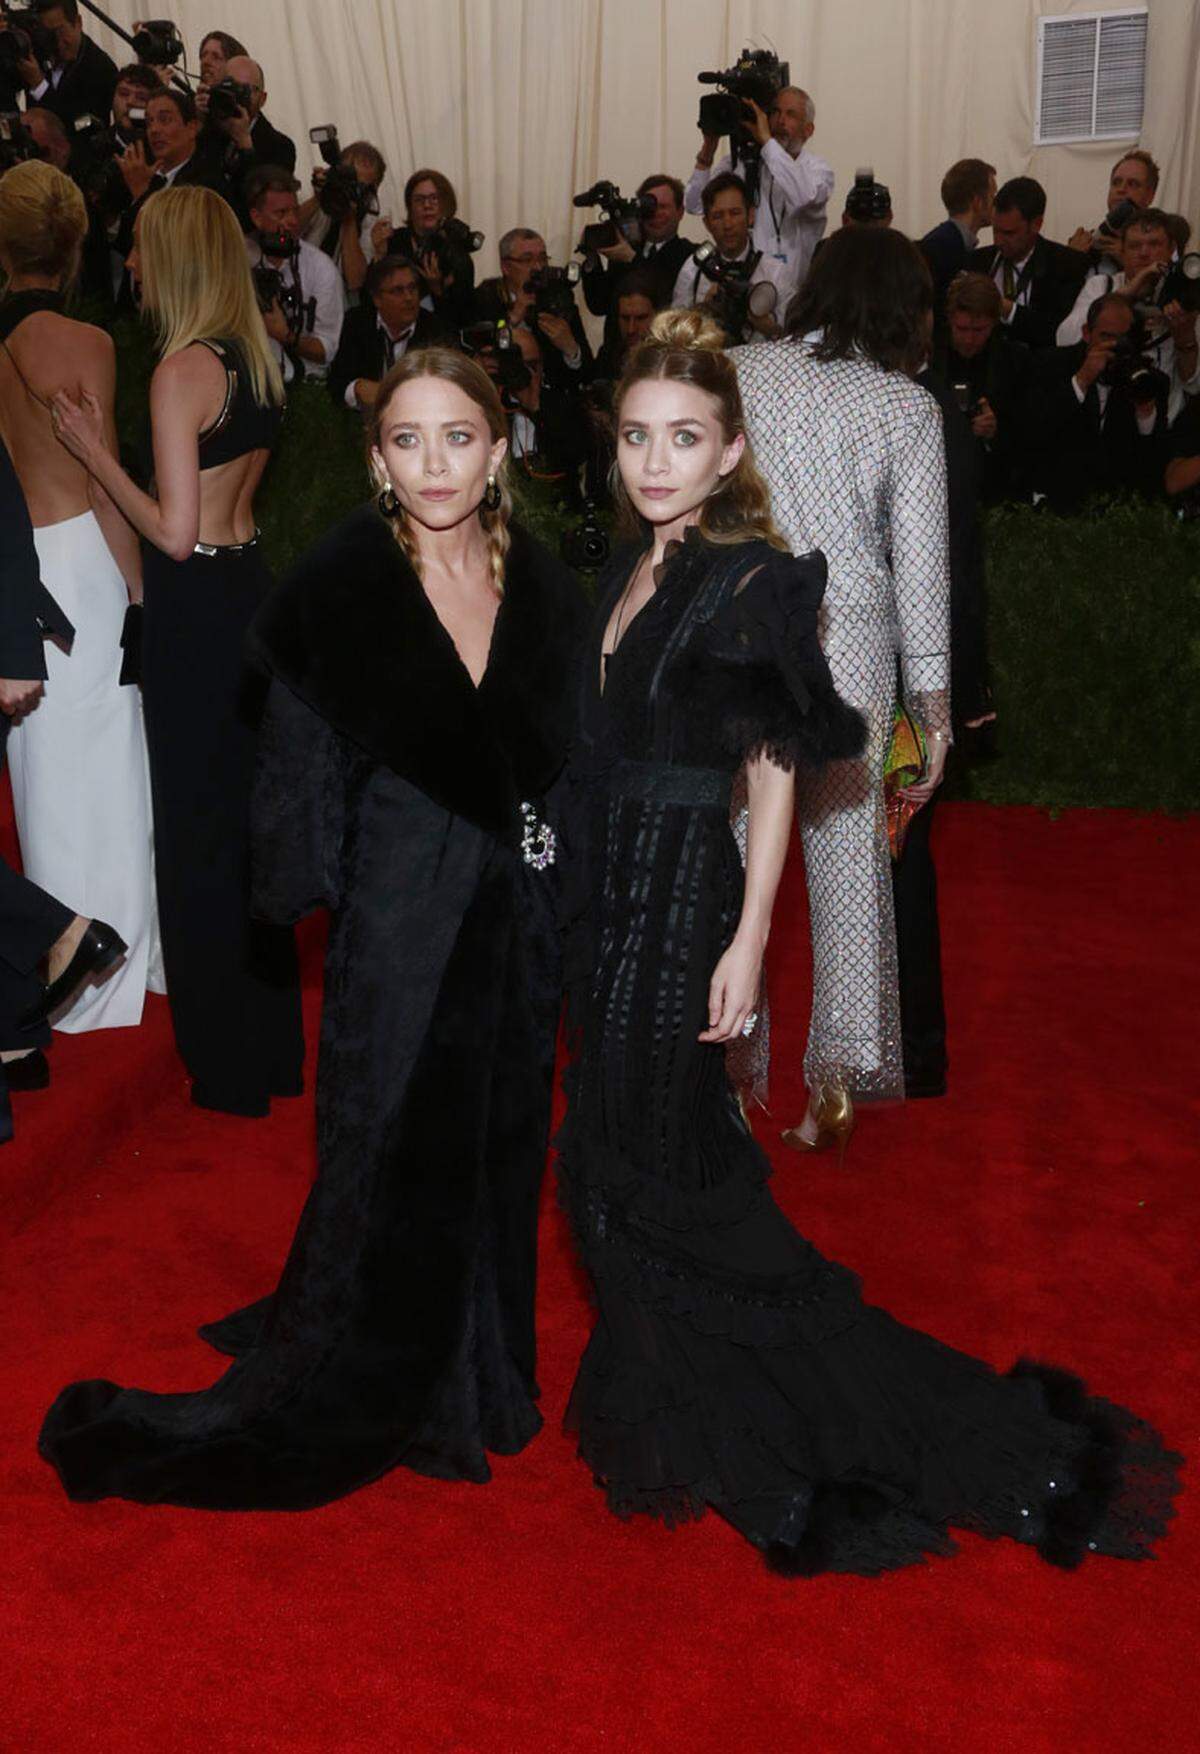 ... zeigen sich Mary-Kate und Ashley Olsen den Fotografen jetzt düsterer und professioneller.